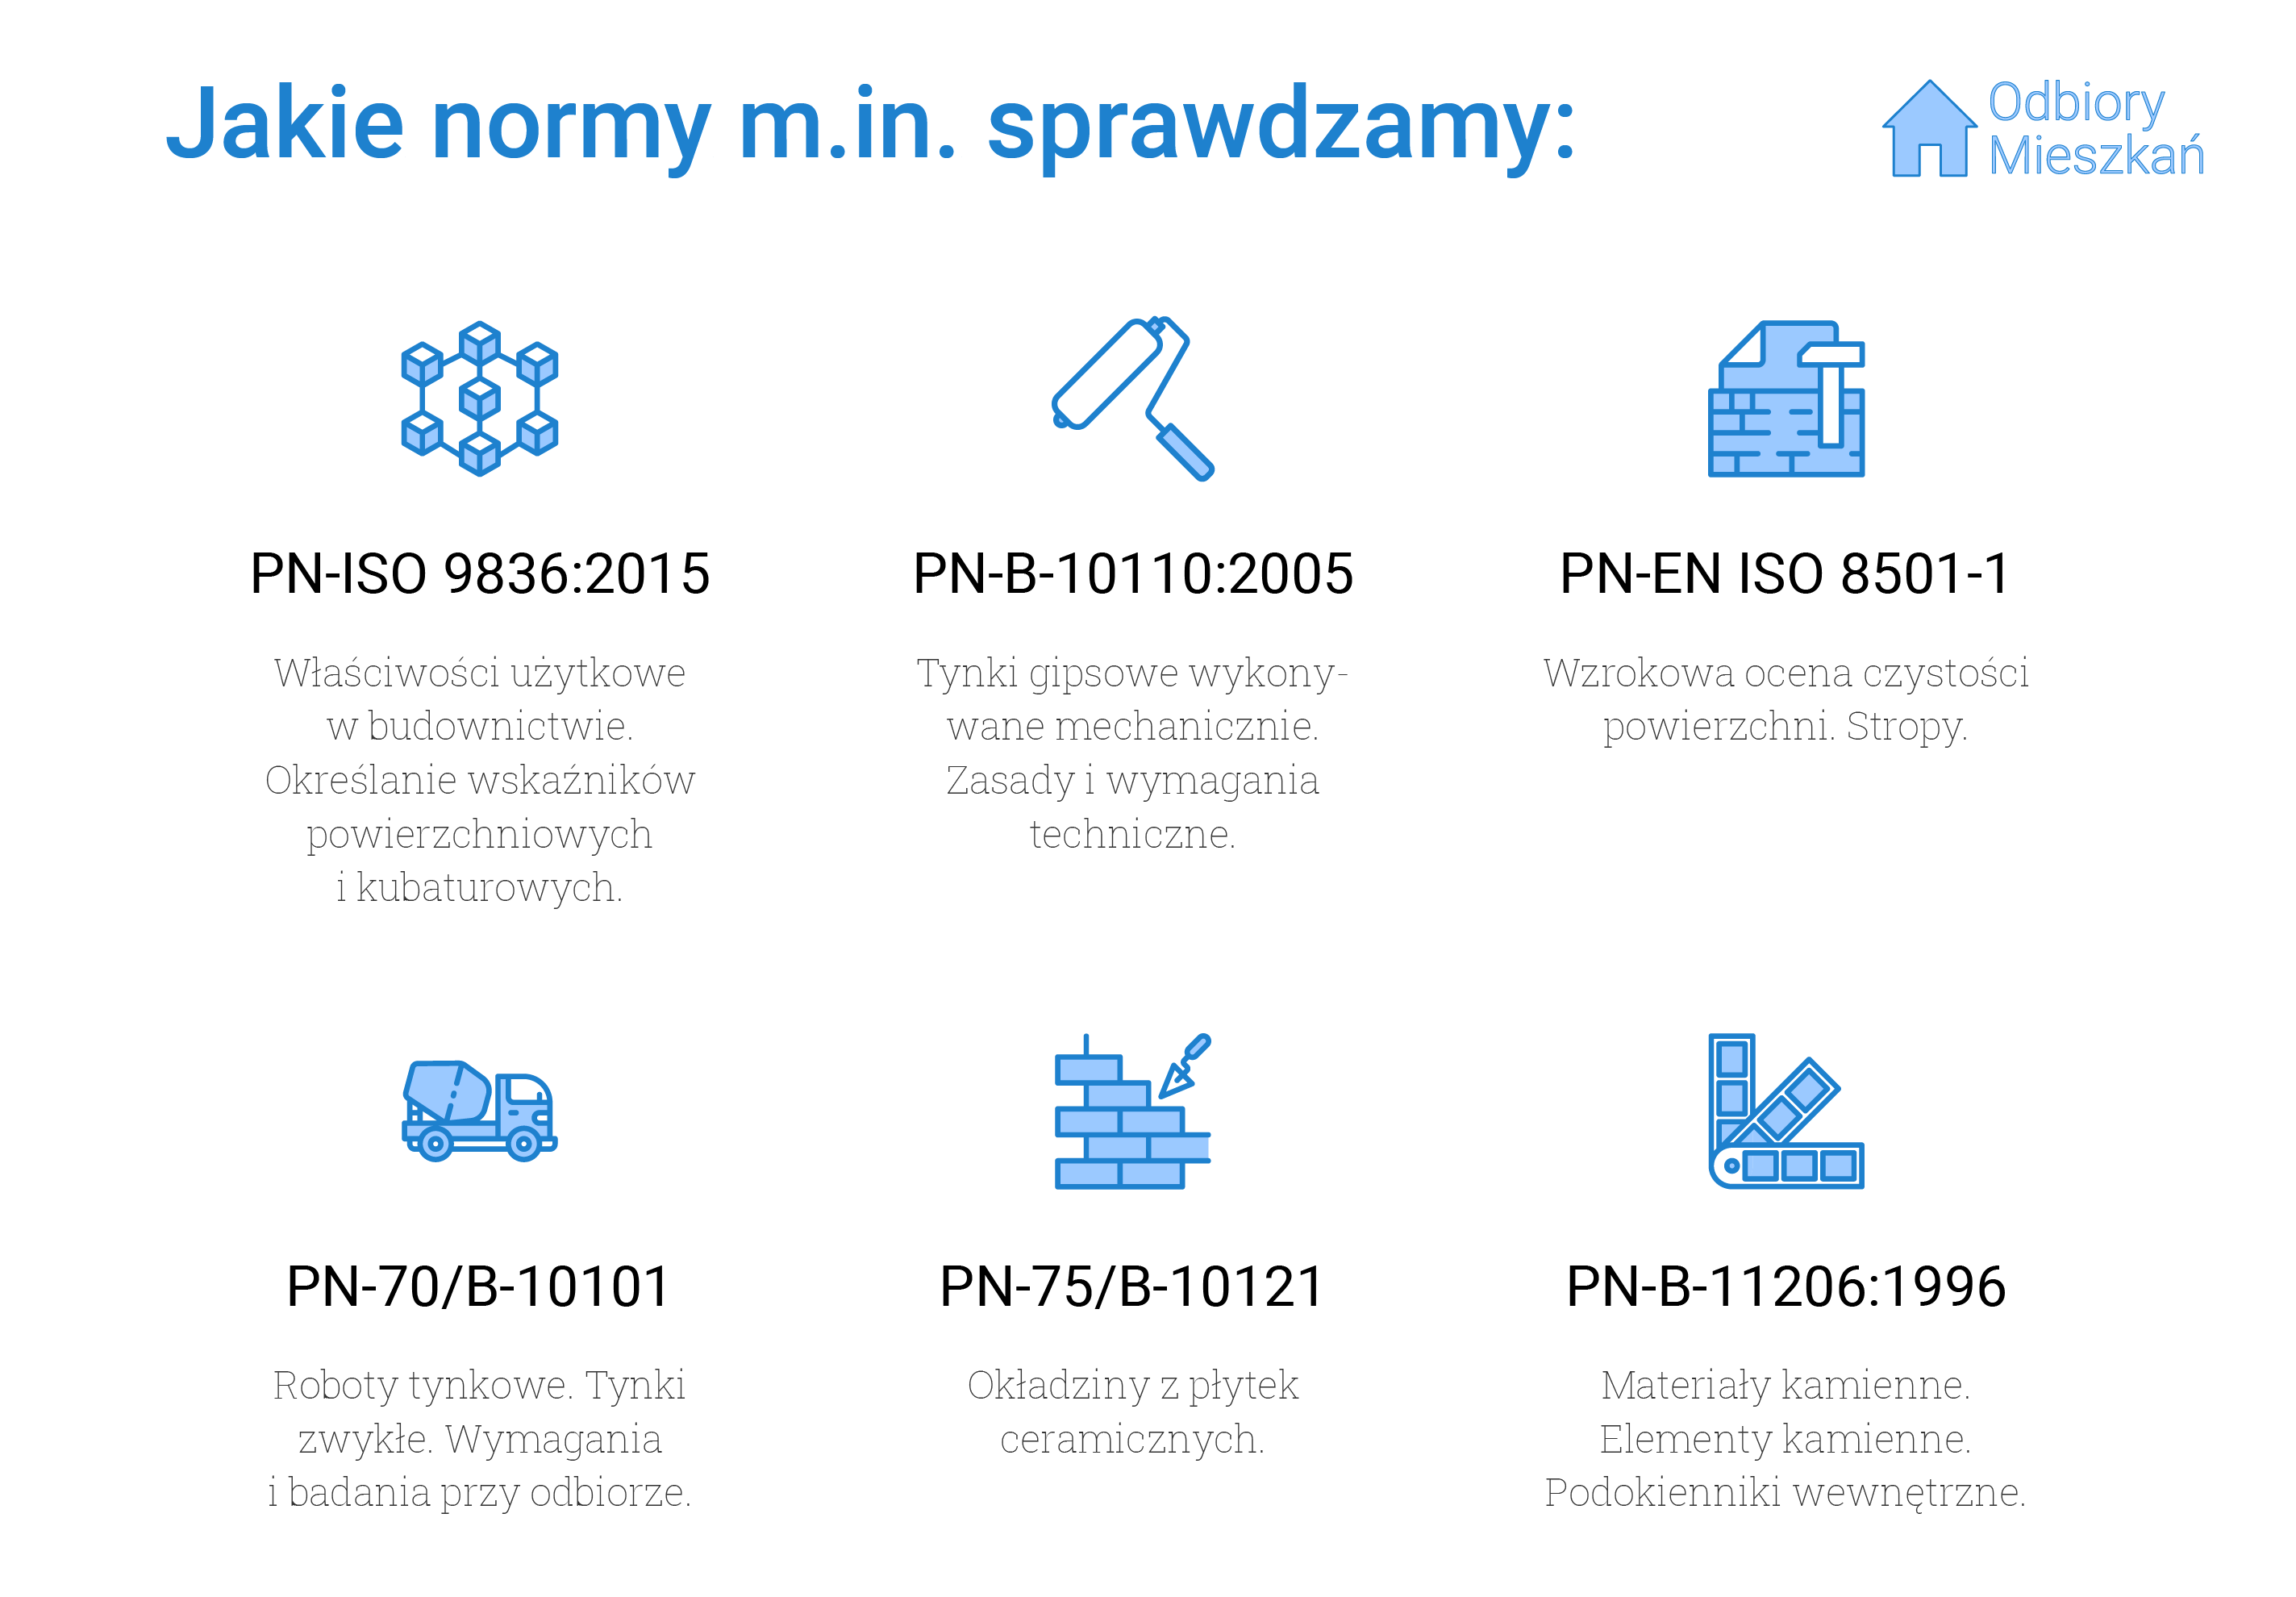 Normy, jakie sprawdzamy podczas odbioru technicznego we Wrocławiu: PN-ISO 9836:2015 - właściwości użytkowe w budownictwie i określanie wskaźników powierzchni kubaturowych, PN-B-10110:2005 - tynki gipsowe wykonywane mechanicznie oraz zasady i wymagania techniczne wykonywania tynków, PN-EN ISO 8501-1, czyli wzrokowa ocena czystości powierzchni oraz stropy, PN-70/B-10101 - roboty tynkowe, tynki zwykłe oraz wymagania przy odbiorze tynków, PN-75/B10121, czyli okładziny z płytek ceramicznych oraz PN-B-11206:1996, czyli materiały i elementy kamienne oraz podokienniki wewnętrzne.